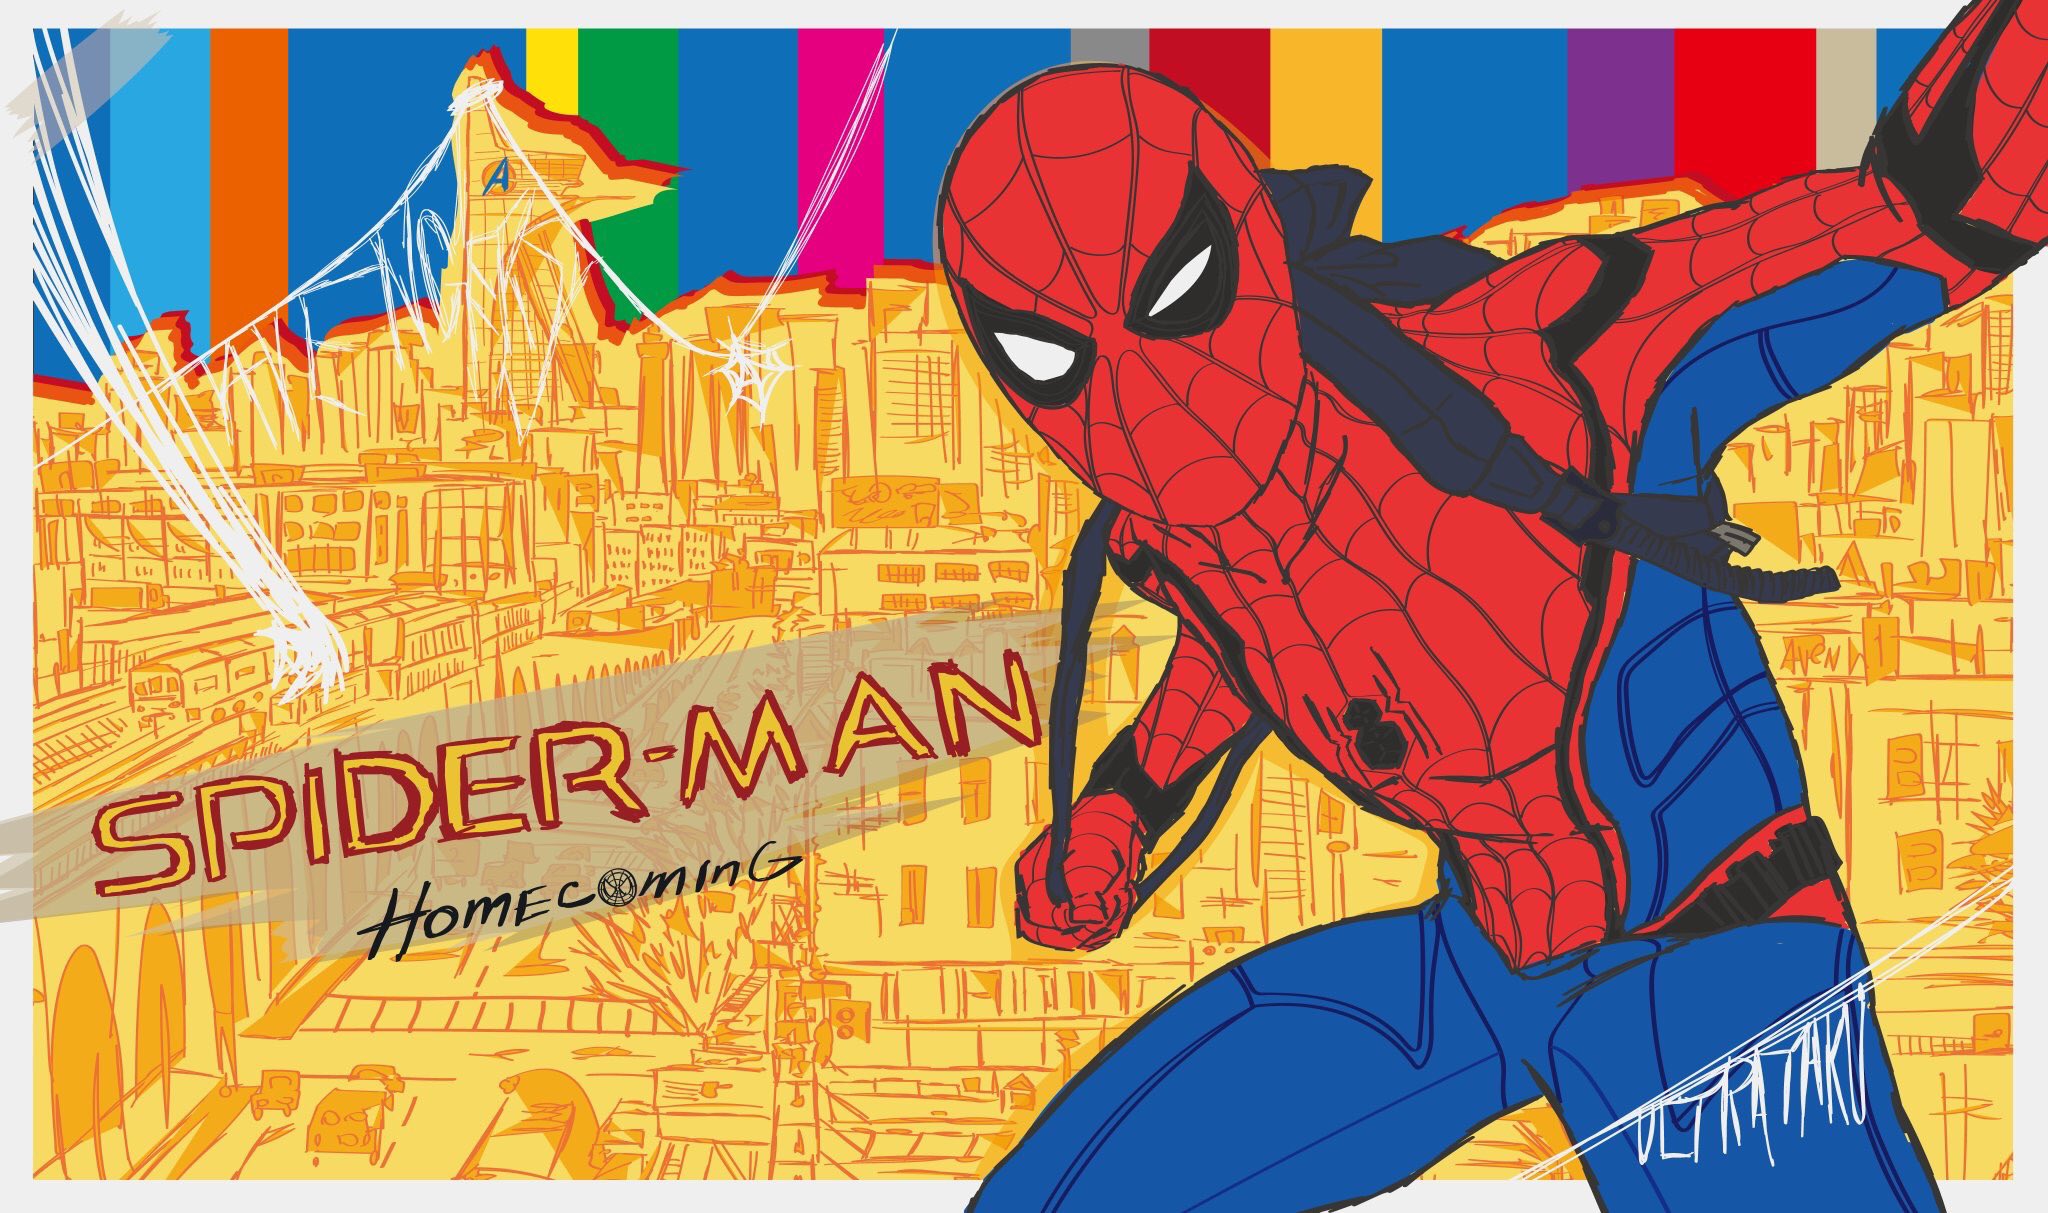 Ultrataku 在 Twitter 上 今まで描いたスパイダーマンイラスト Spiderman Spiderverse スパイダーマンは1人じゃない スパイダーバース スパイダーマン T Co 1snjfjphqv Twitter